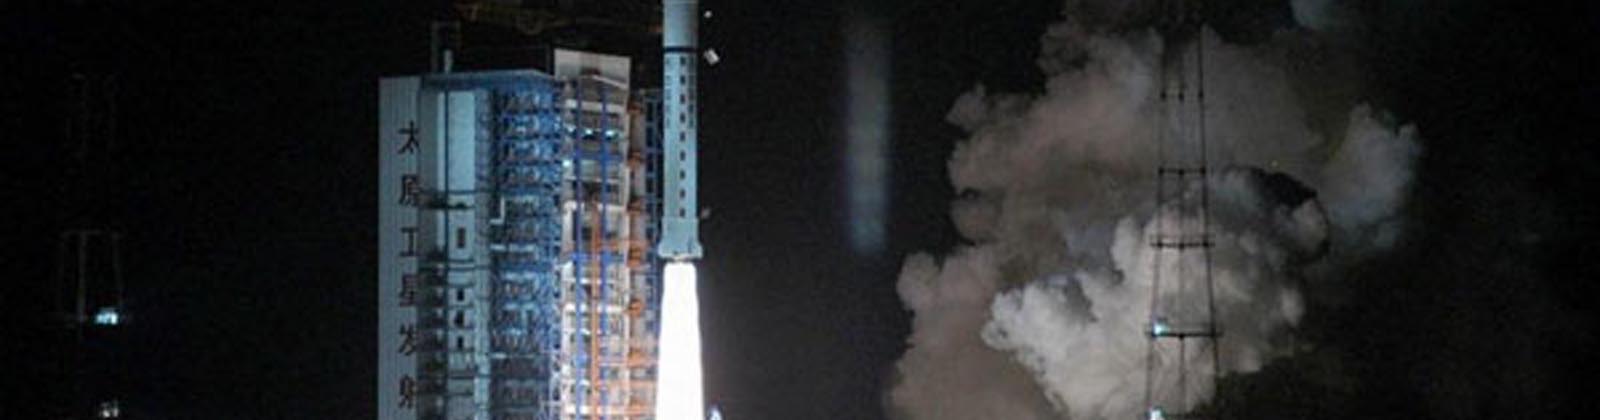 Lancement du satellite Feng-Yun 3B